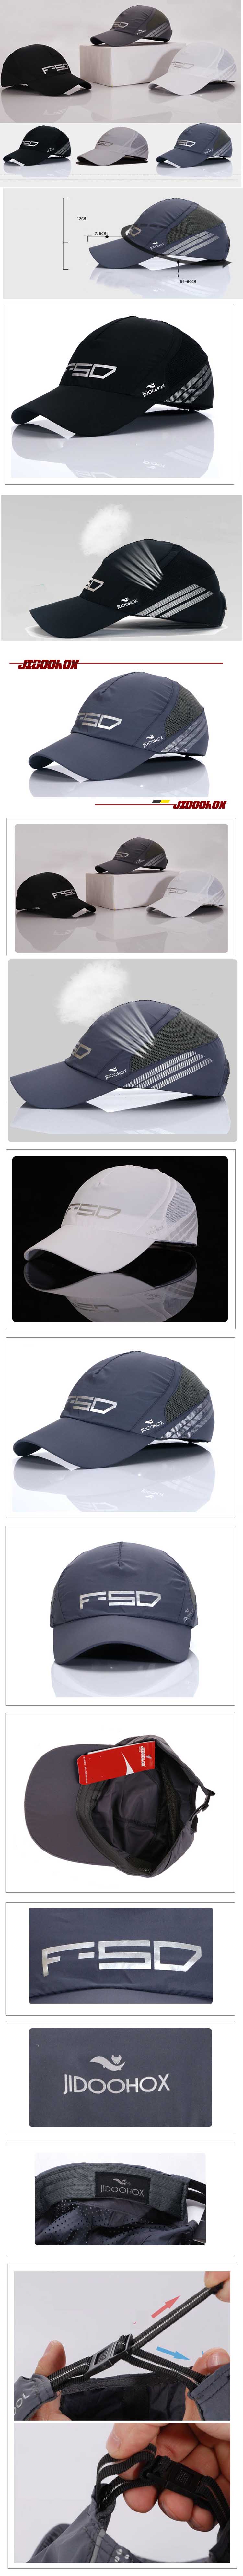 jual topi pria logo f50 , temukan koleksi topi pria keren terlengkap dan terbaru hanya di sini